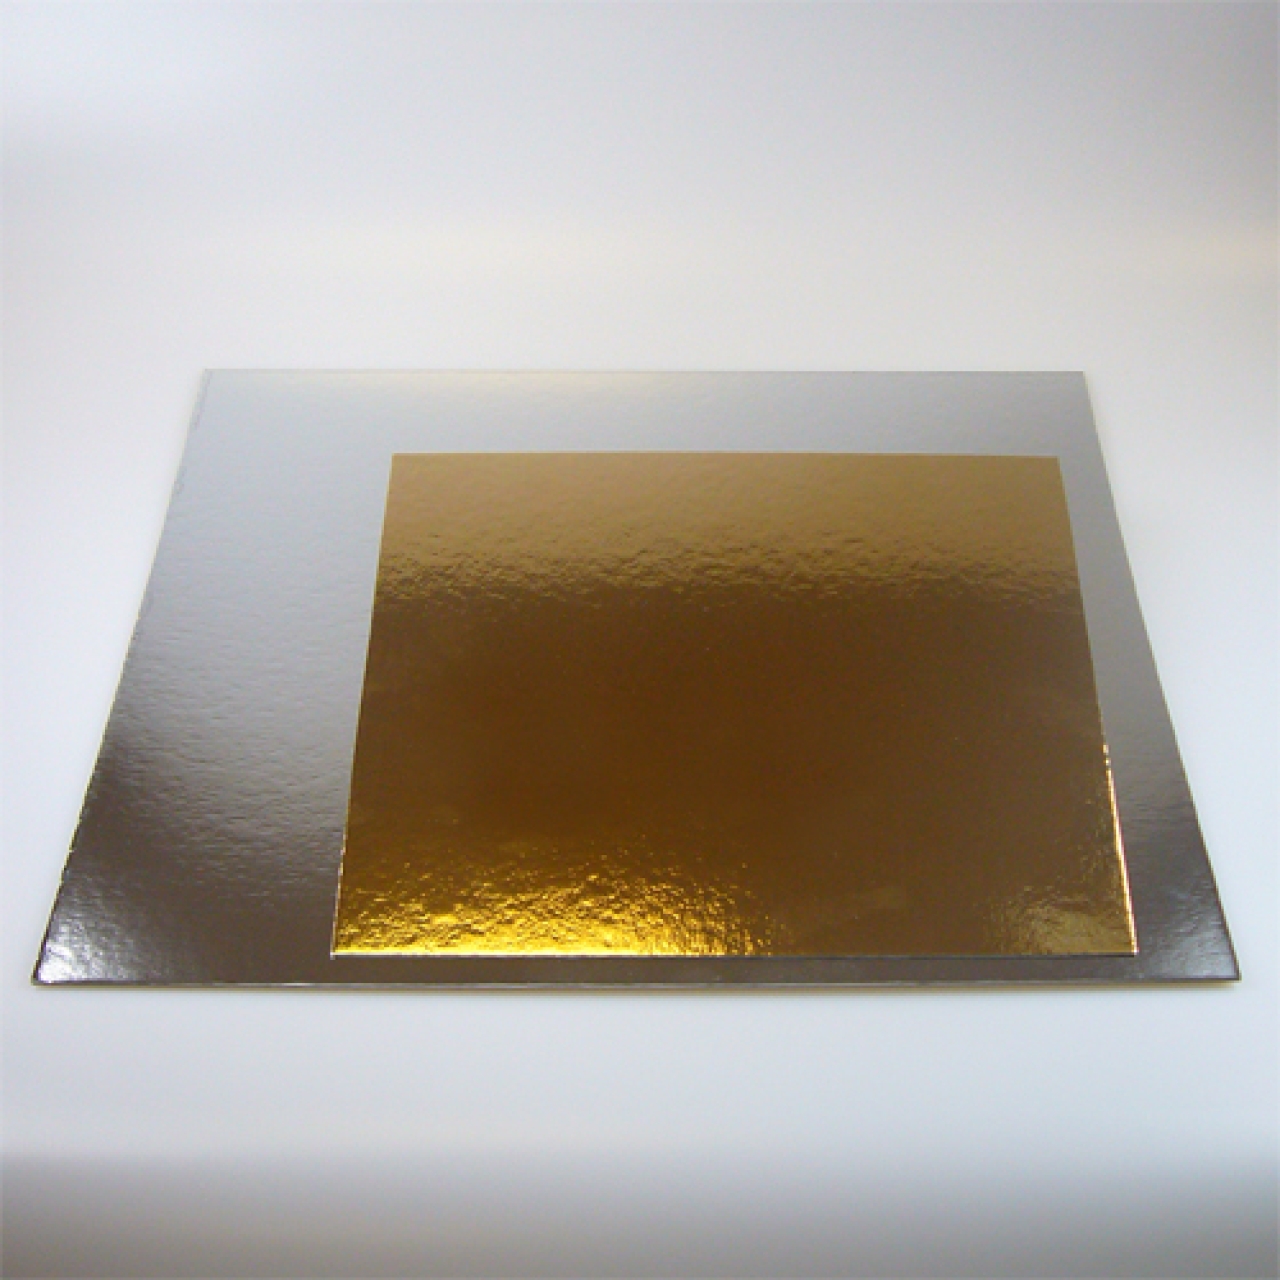 Tortenscheibe, Tortenboden gold & silber (beideseitig) ca. 25 cm, quadrat, 3 Stk.